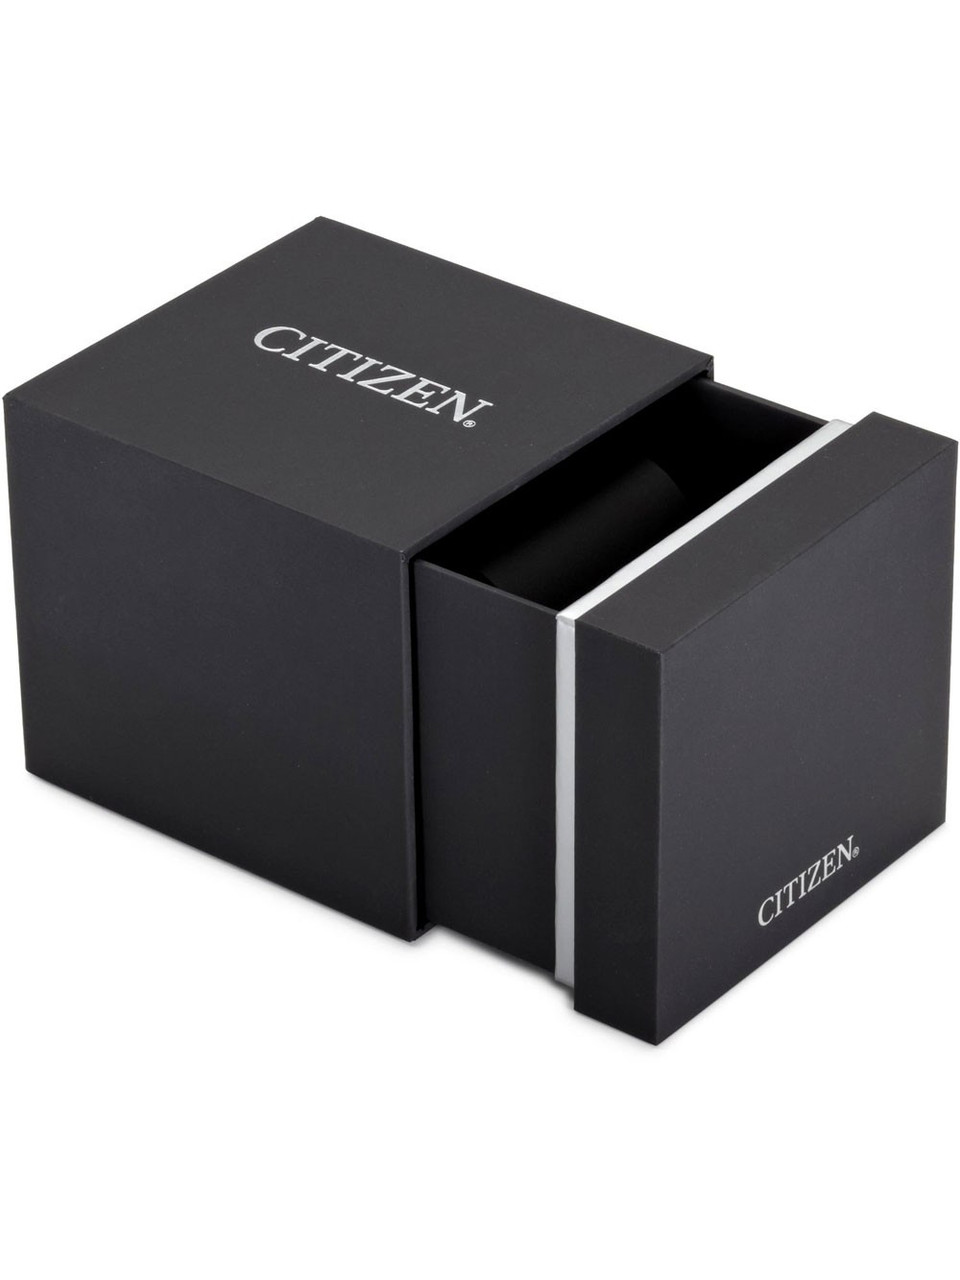 Citizen CA4471-80L Eco-Drive chrono 44 10ATM - owlica | Genuine Watches